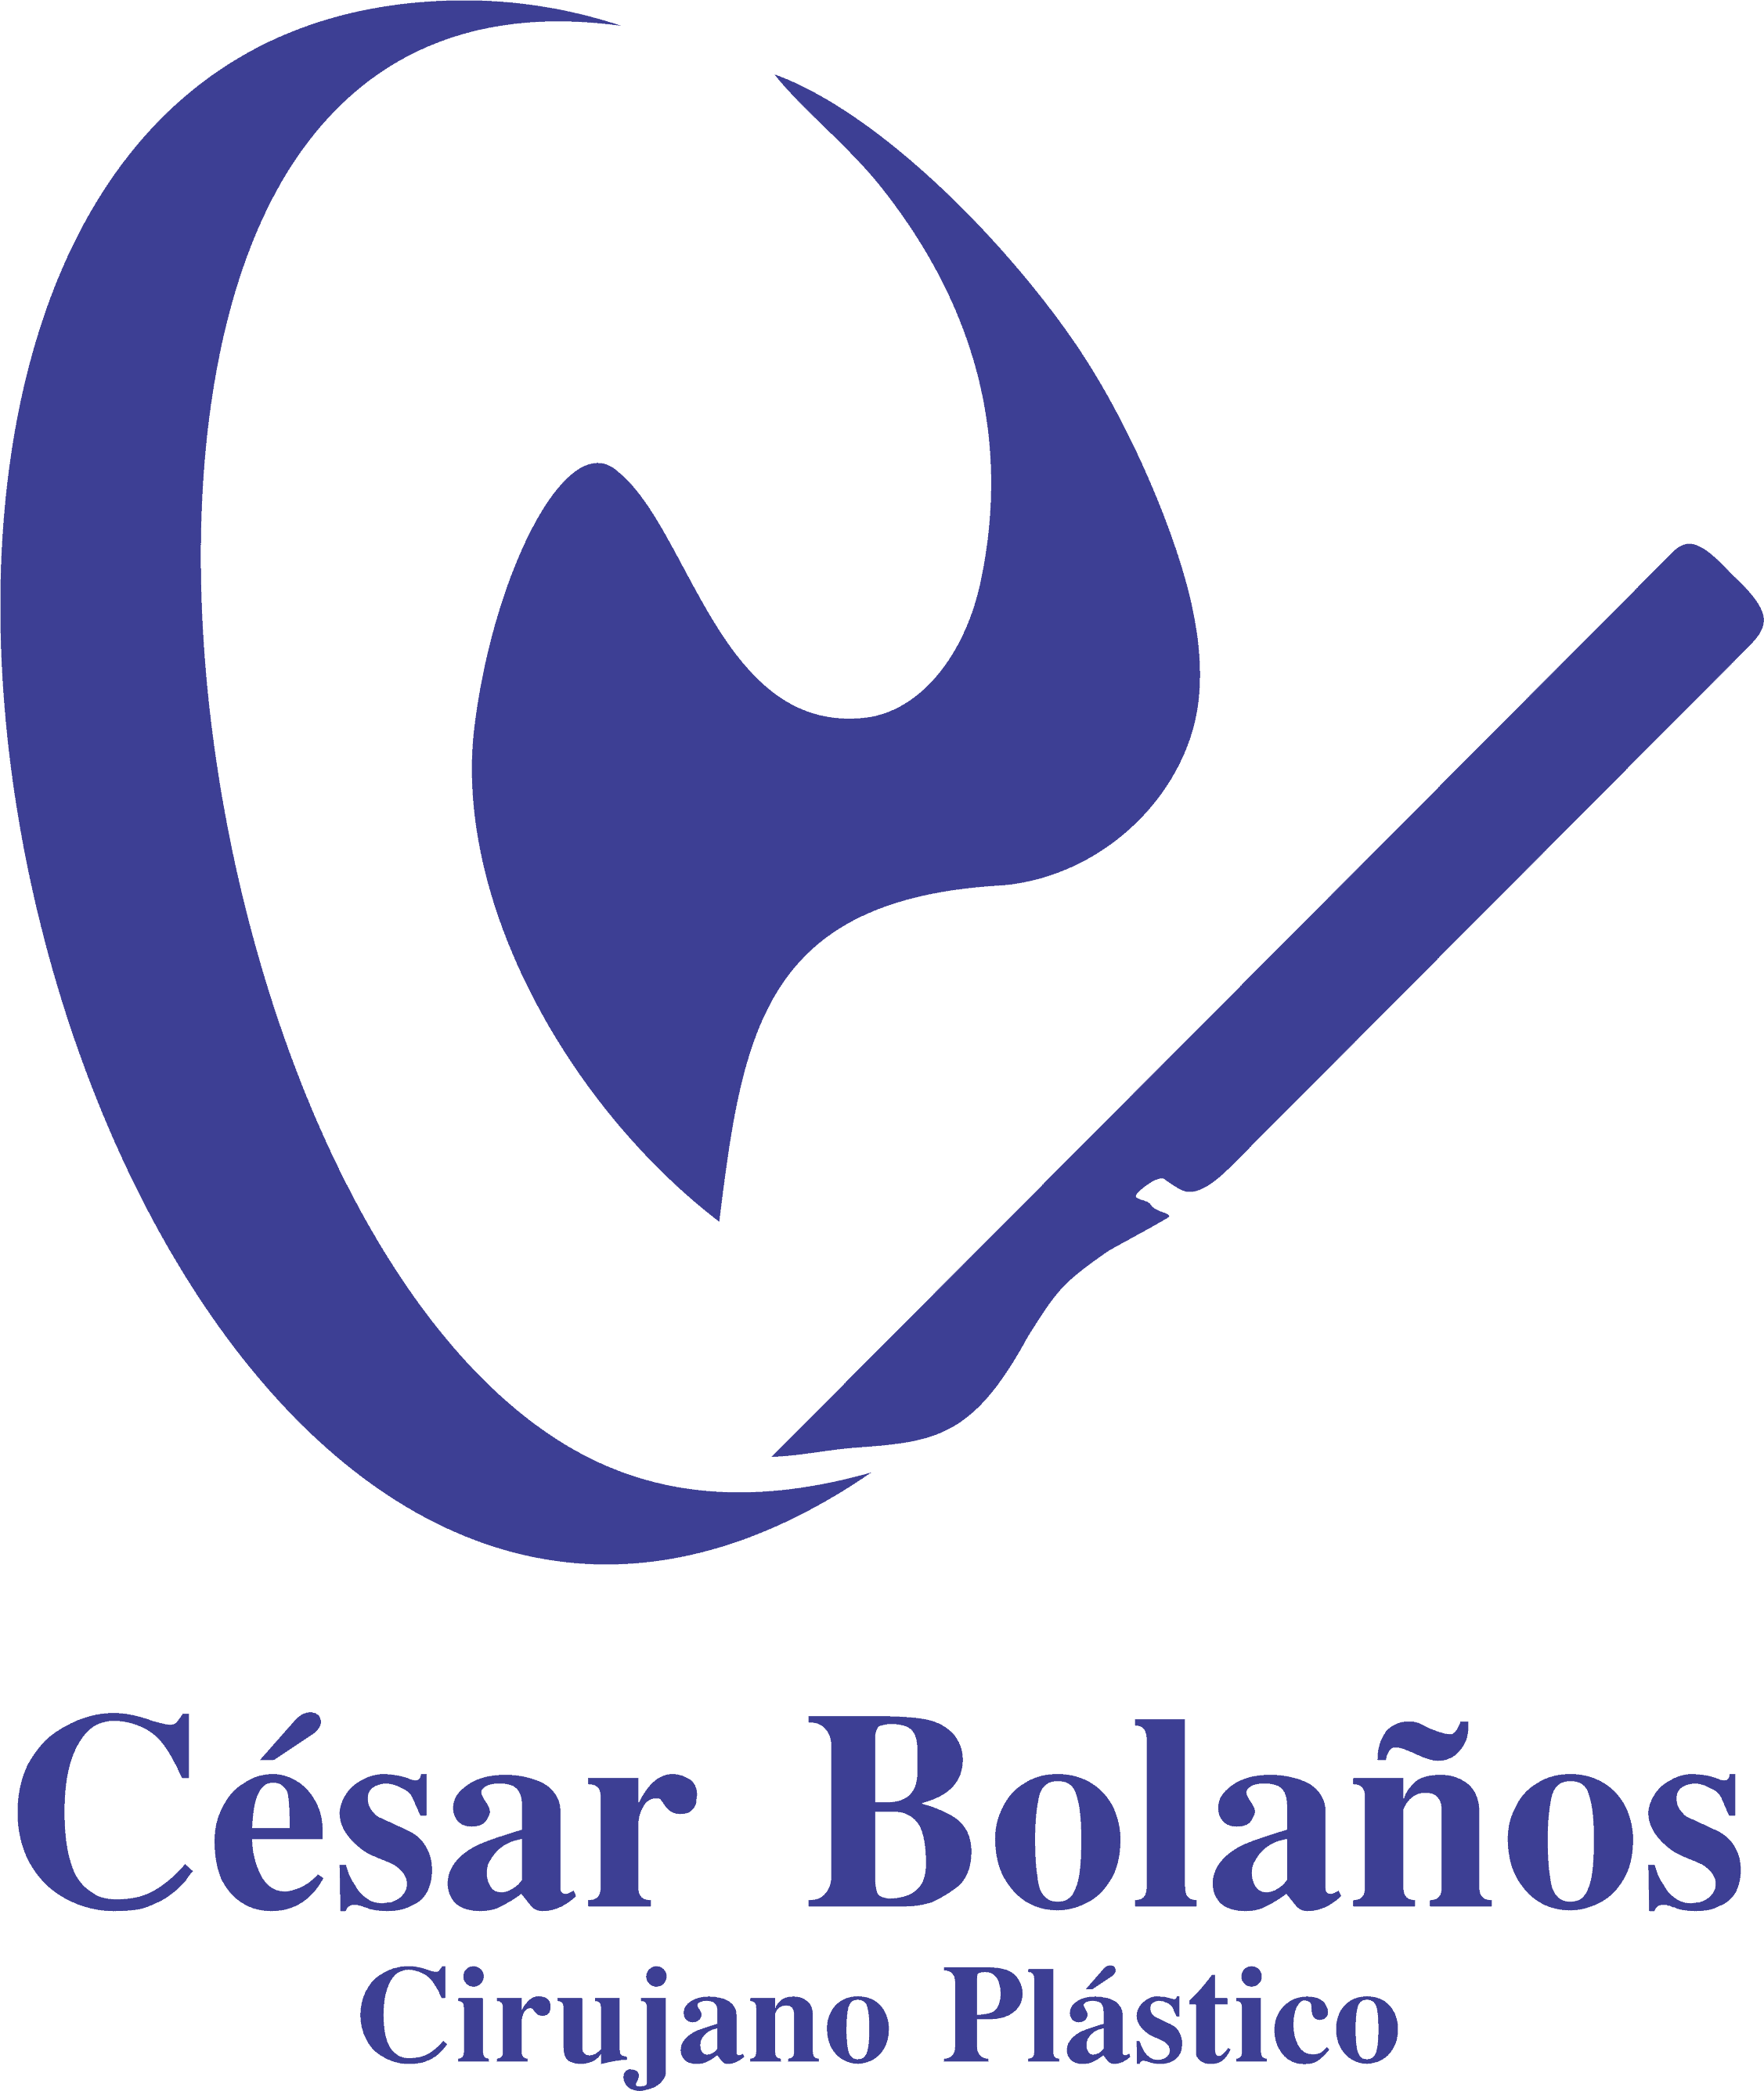 Dr. Cesar Bolaños